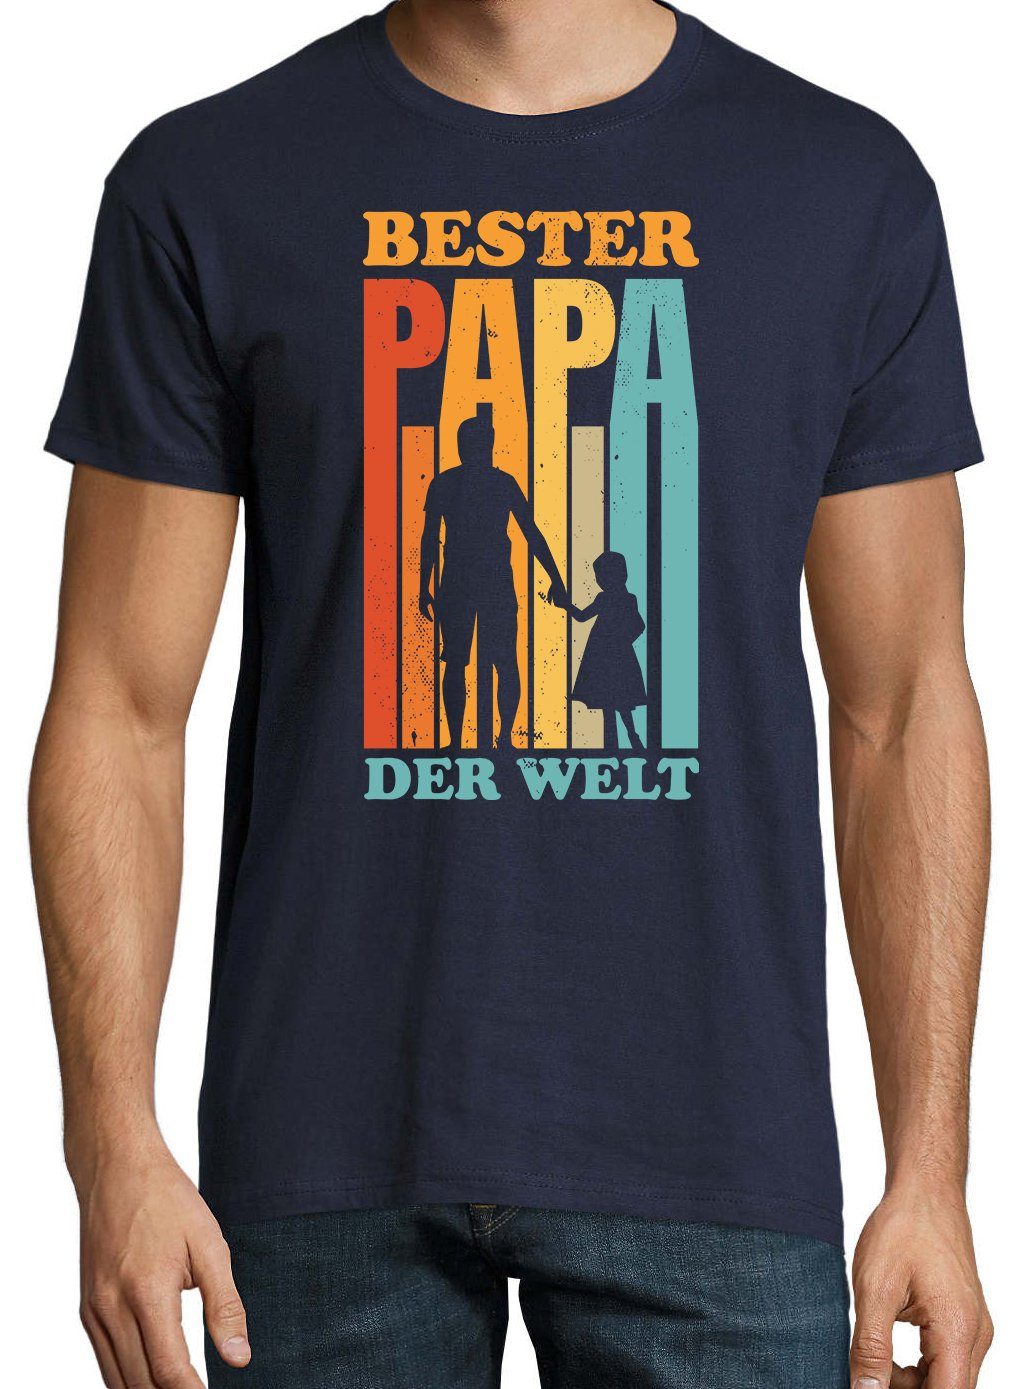 Print mit der T-Shirt "Bester Youth Navy T-Shirt Designz Papa Welt" Herren Spruch